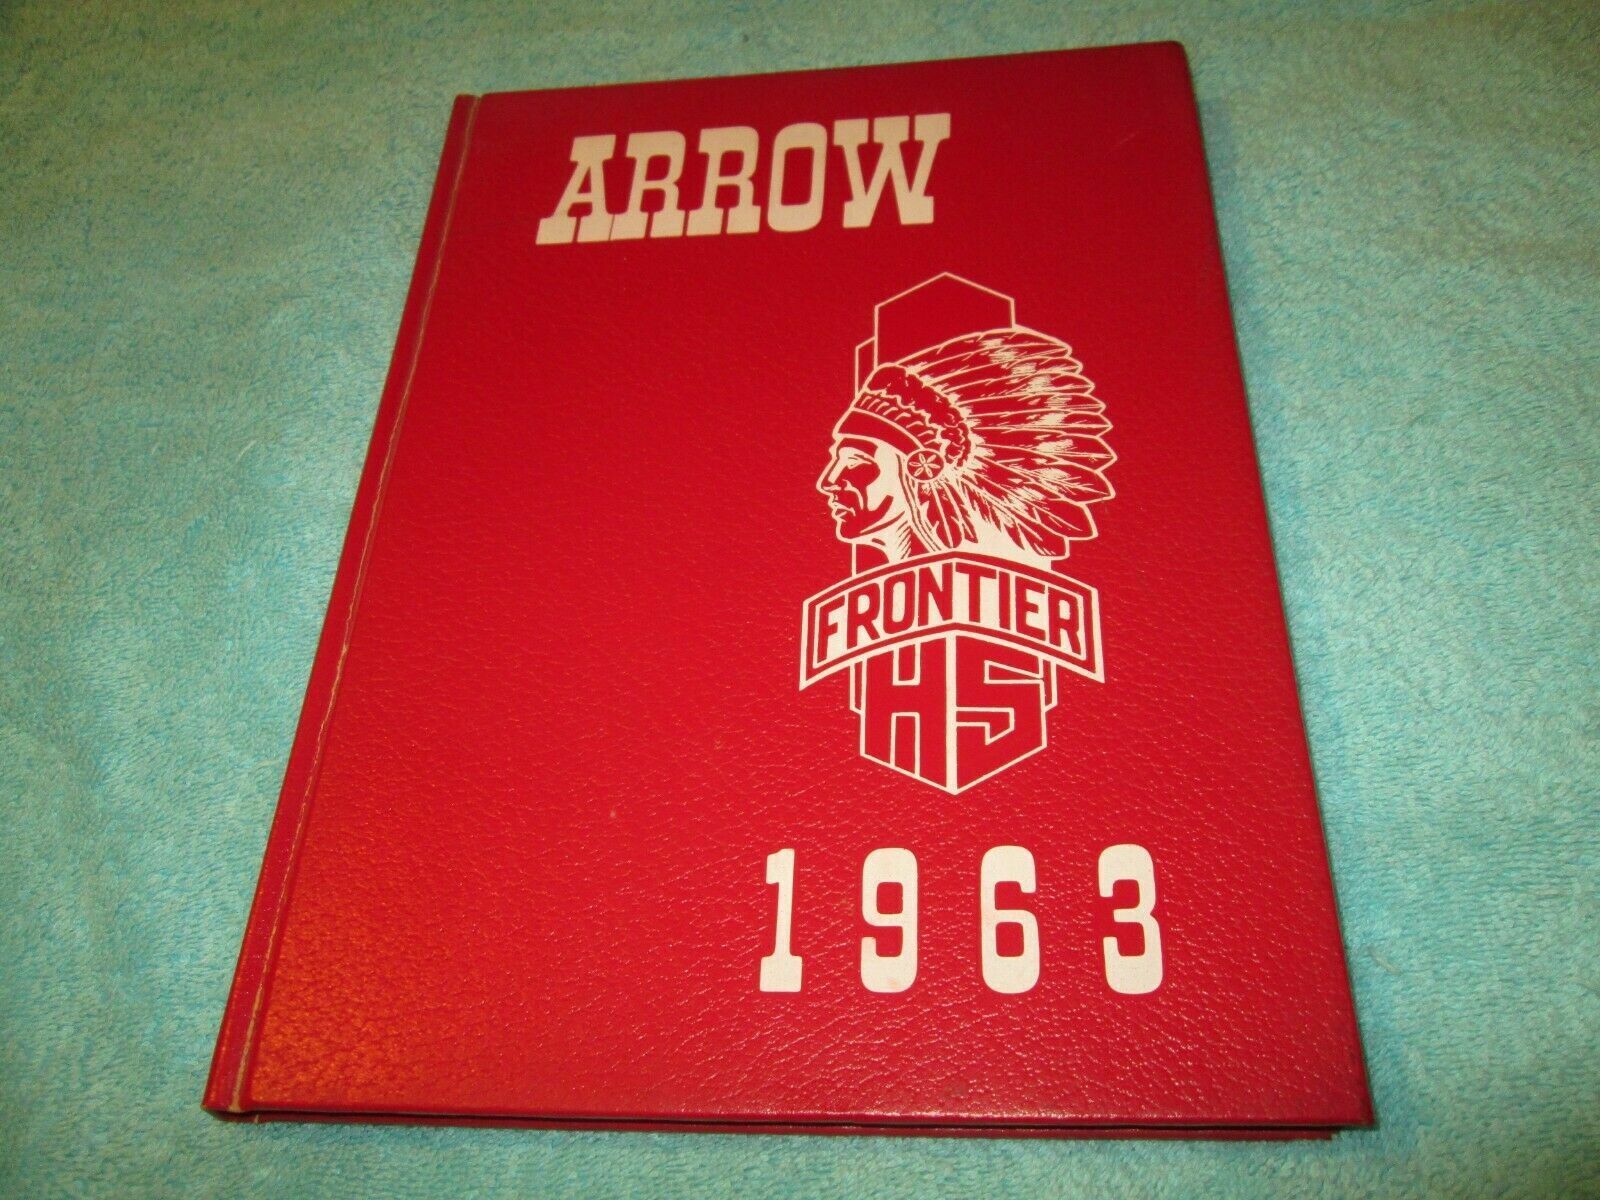 1963 ARROW FRONTIER REGIONAL HIGH SCHOOL YEARBOOK  SOUTH DEERFIELD MASSACHUSETTS